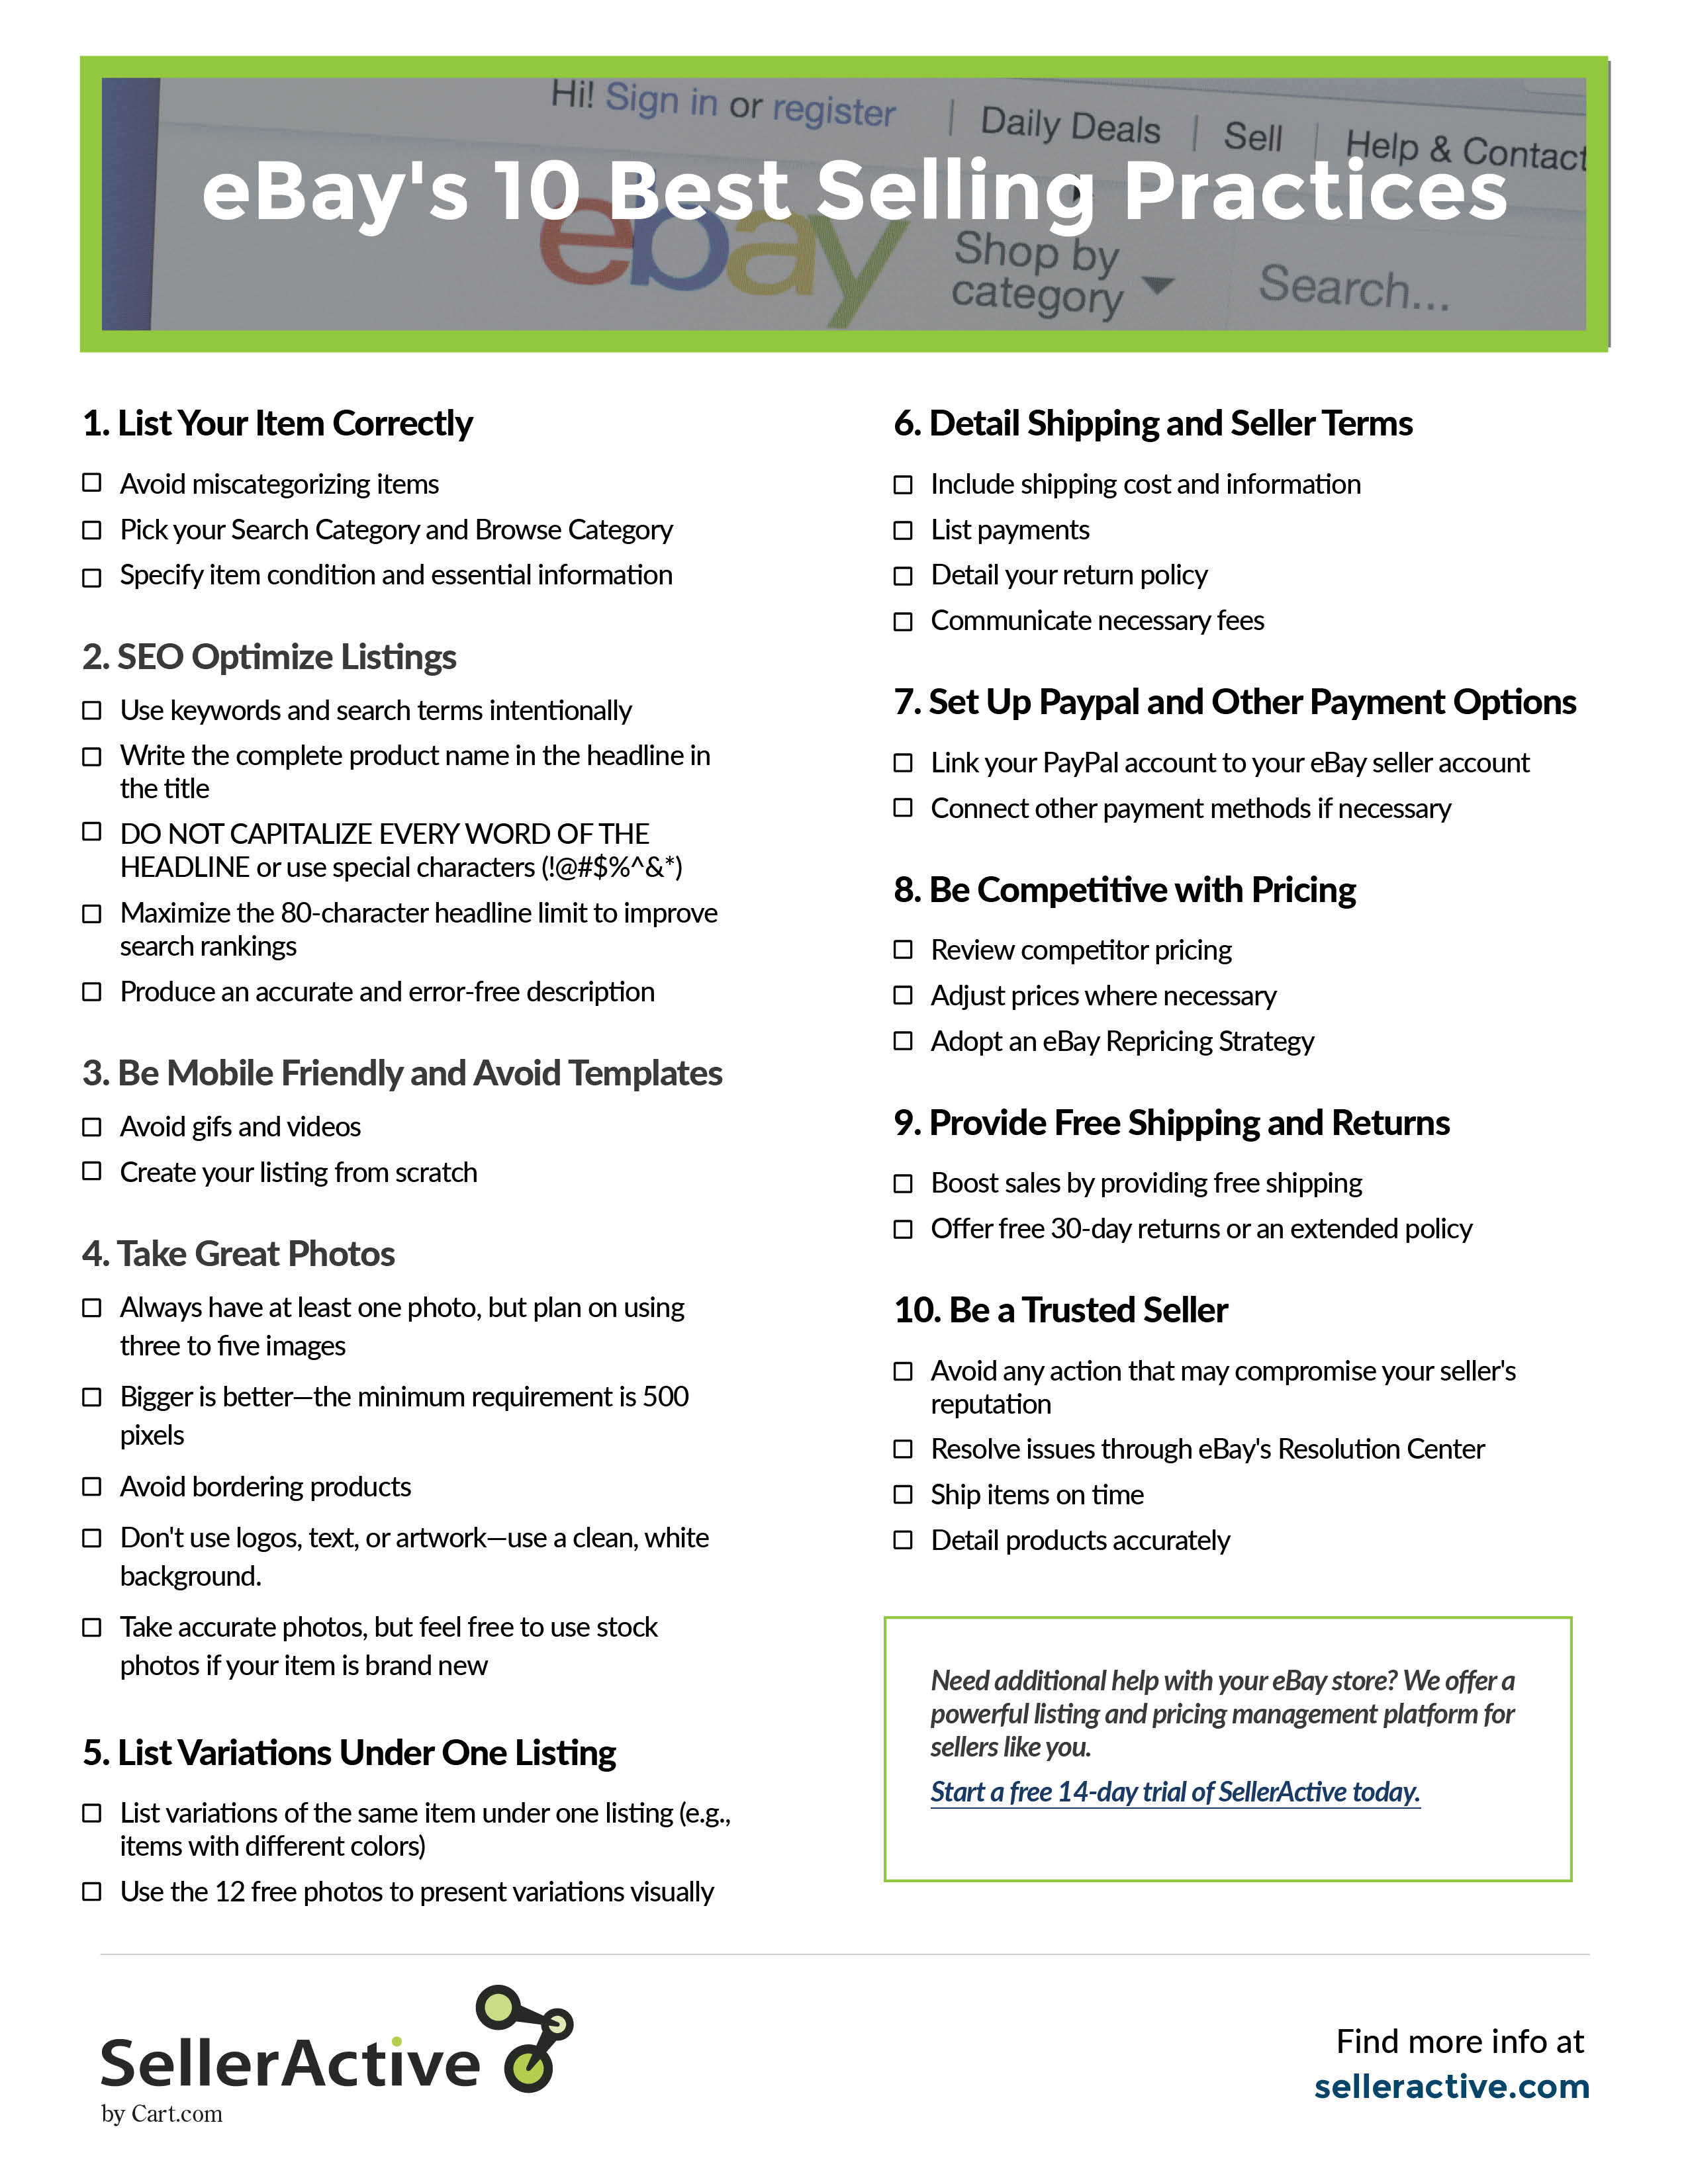 ebays-10-best-selling-practices-checklist